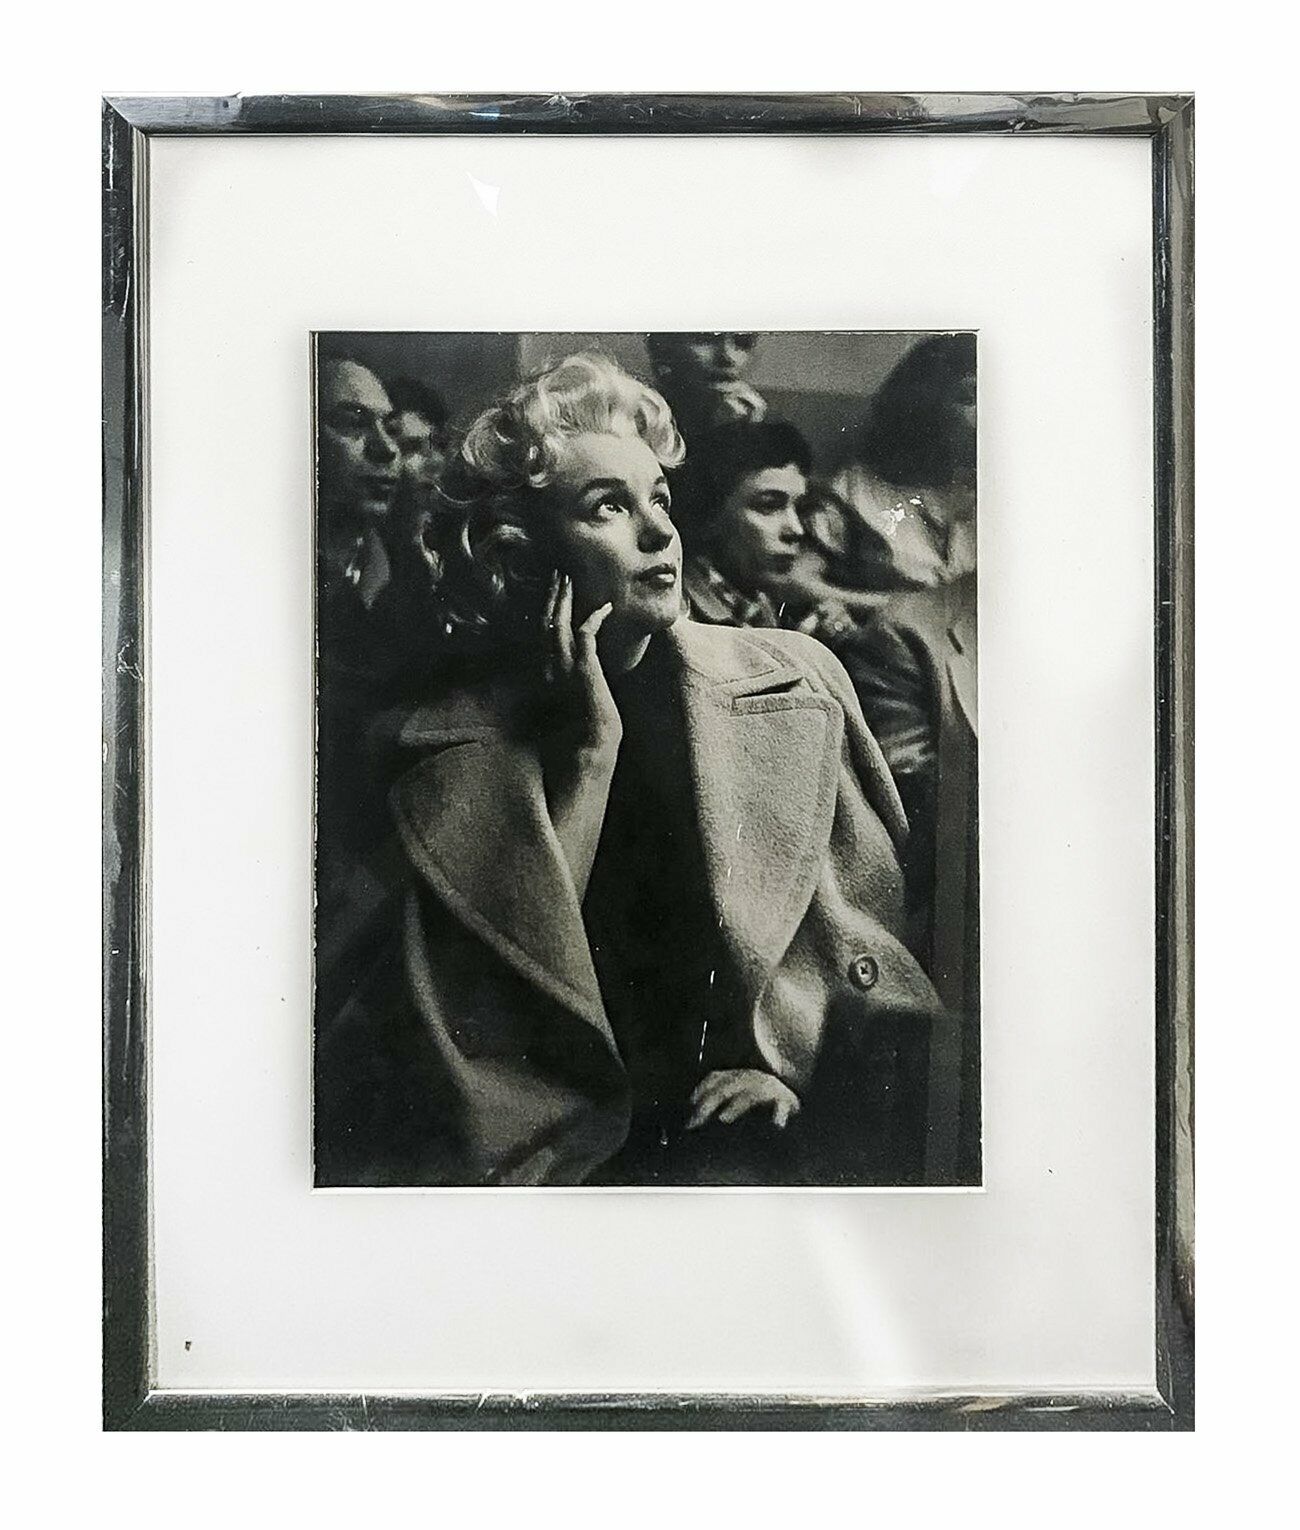 CARL BAKAL Marilyn Monroe in Actor’s Studio 1955 Portrait-$20K APR Value w/ CoA